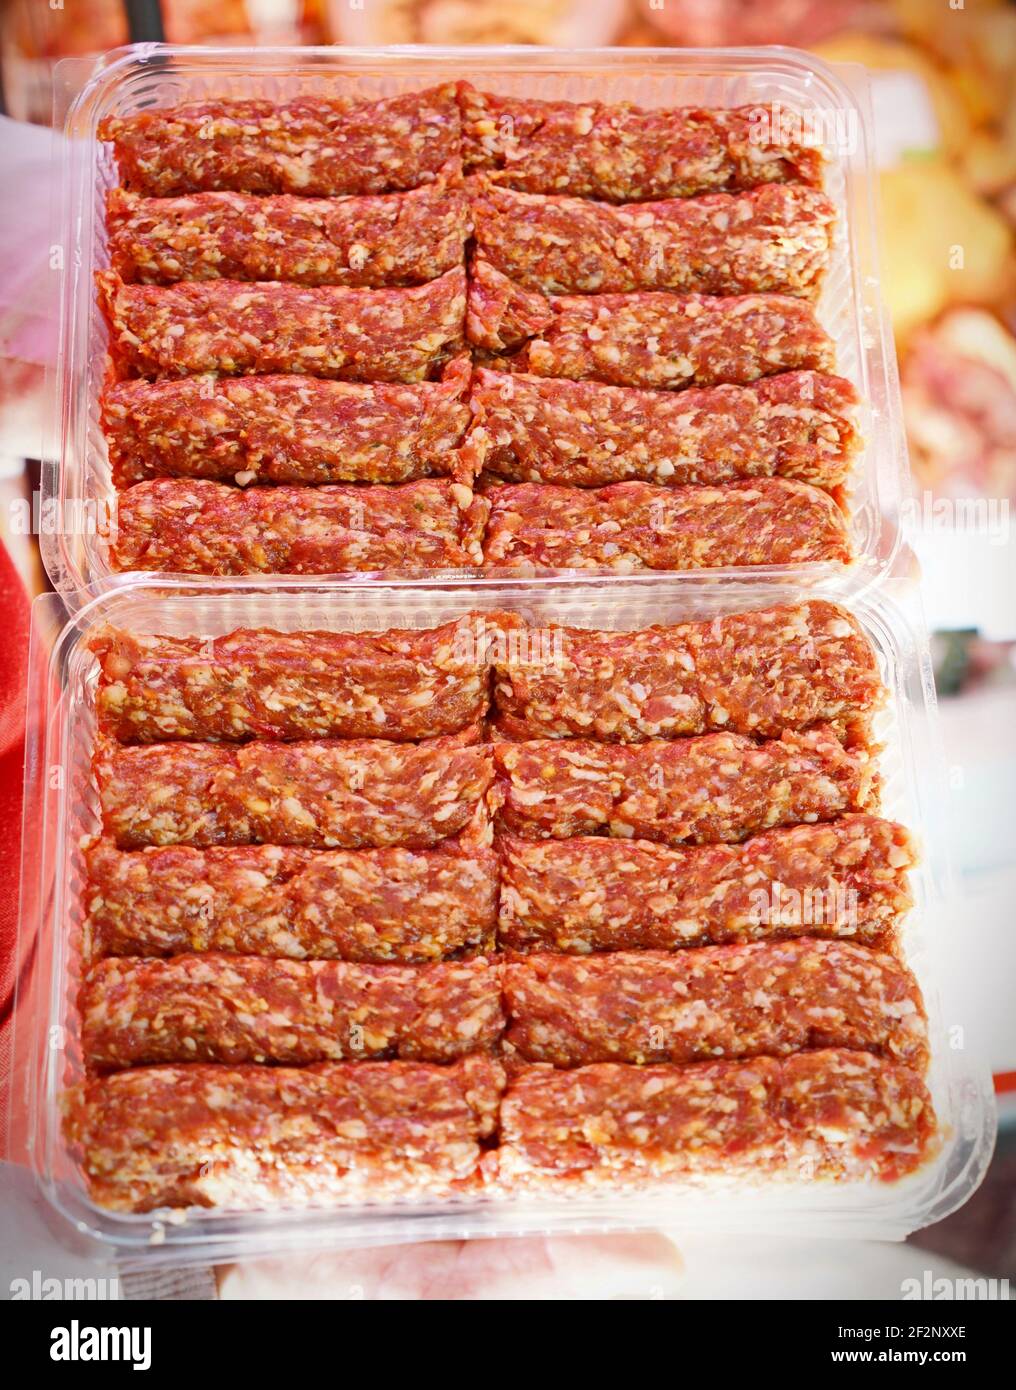 Petits pains de viande roumains non cuits appelés mititei, mici - gros plan. Cuisine traditionnelle roumaine Banque D'Images